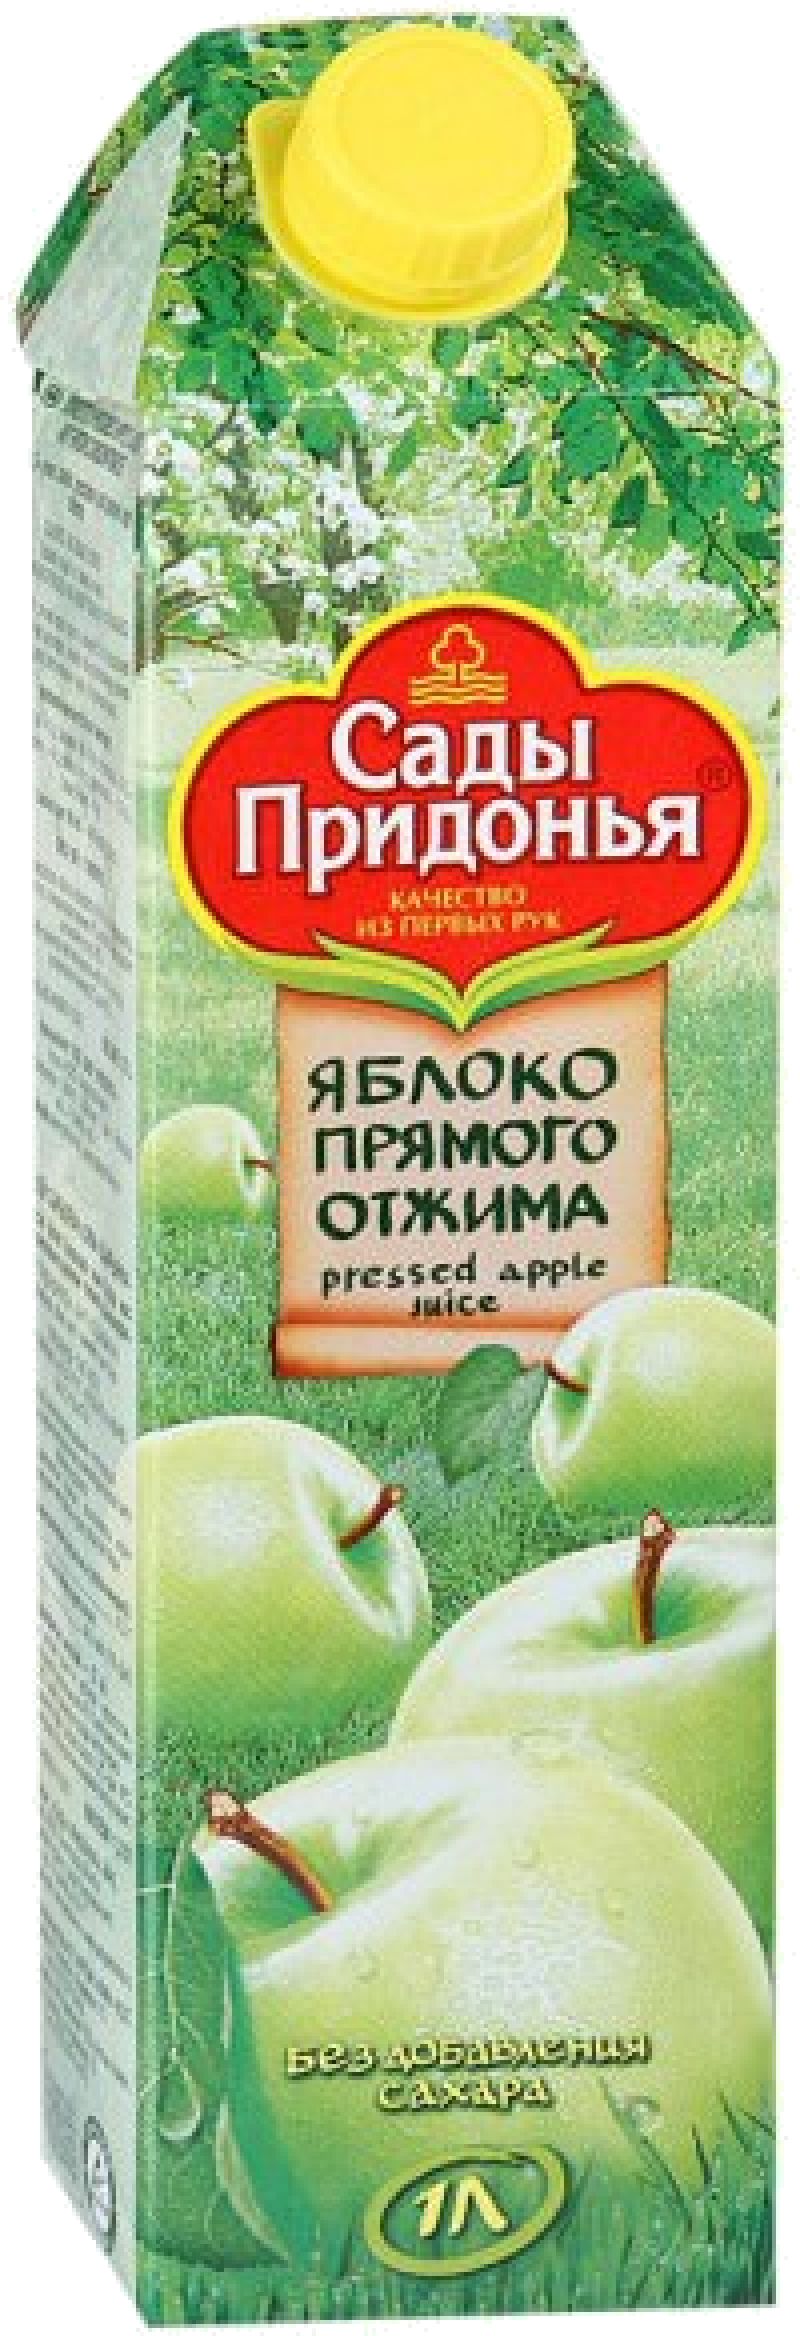 Сок 1,0л Сады Придонья сок яблочный прямого отжима